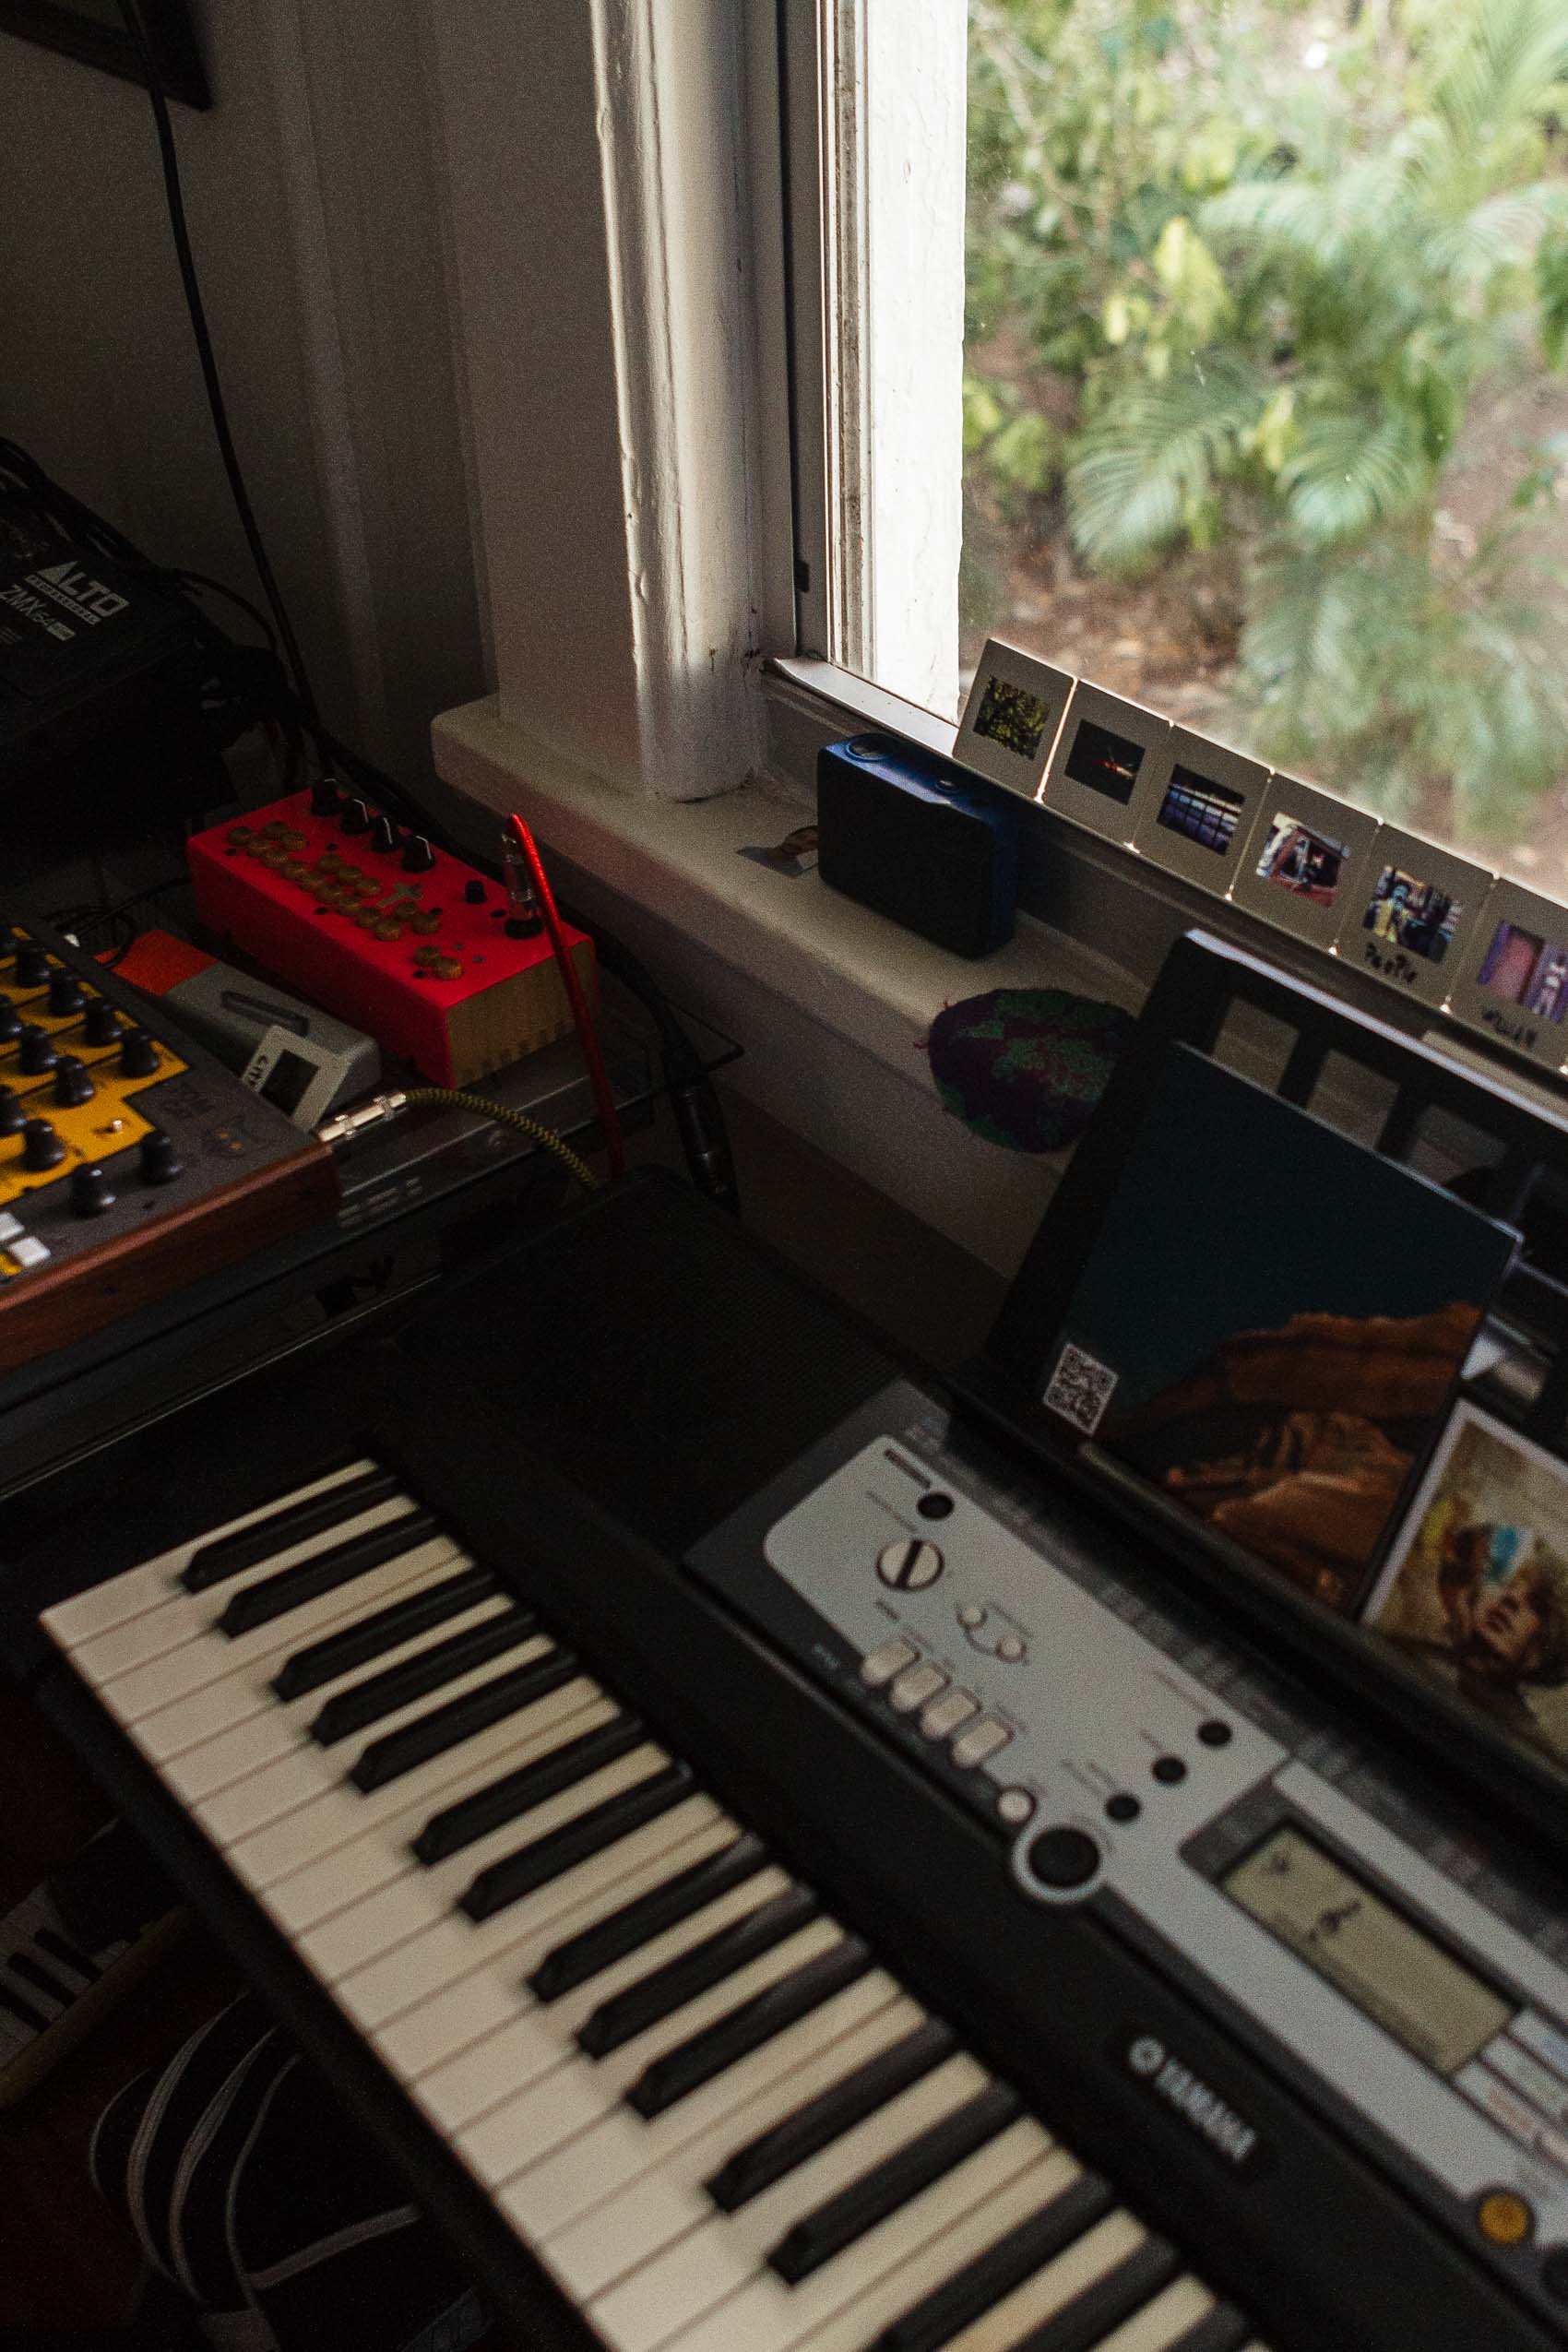 Keyboard in a home studio